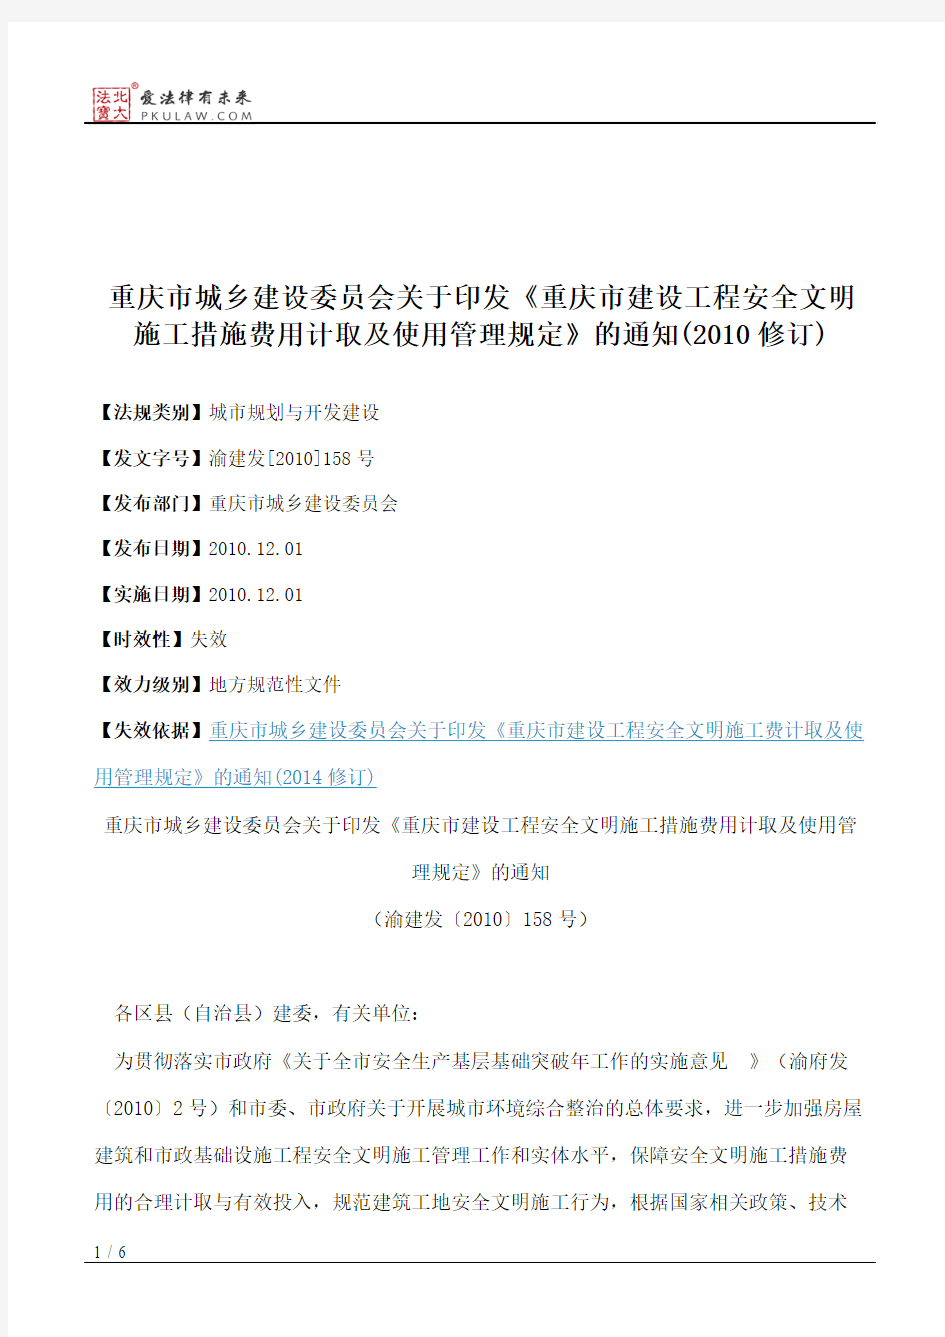 重庆市城乡建设委员会关于印发《重庆市建设工程安全文明施工措施